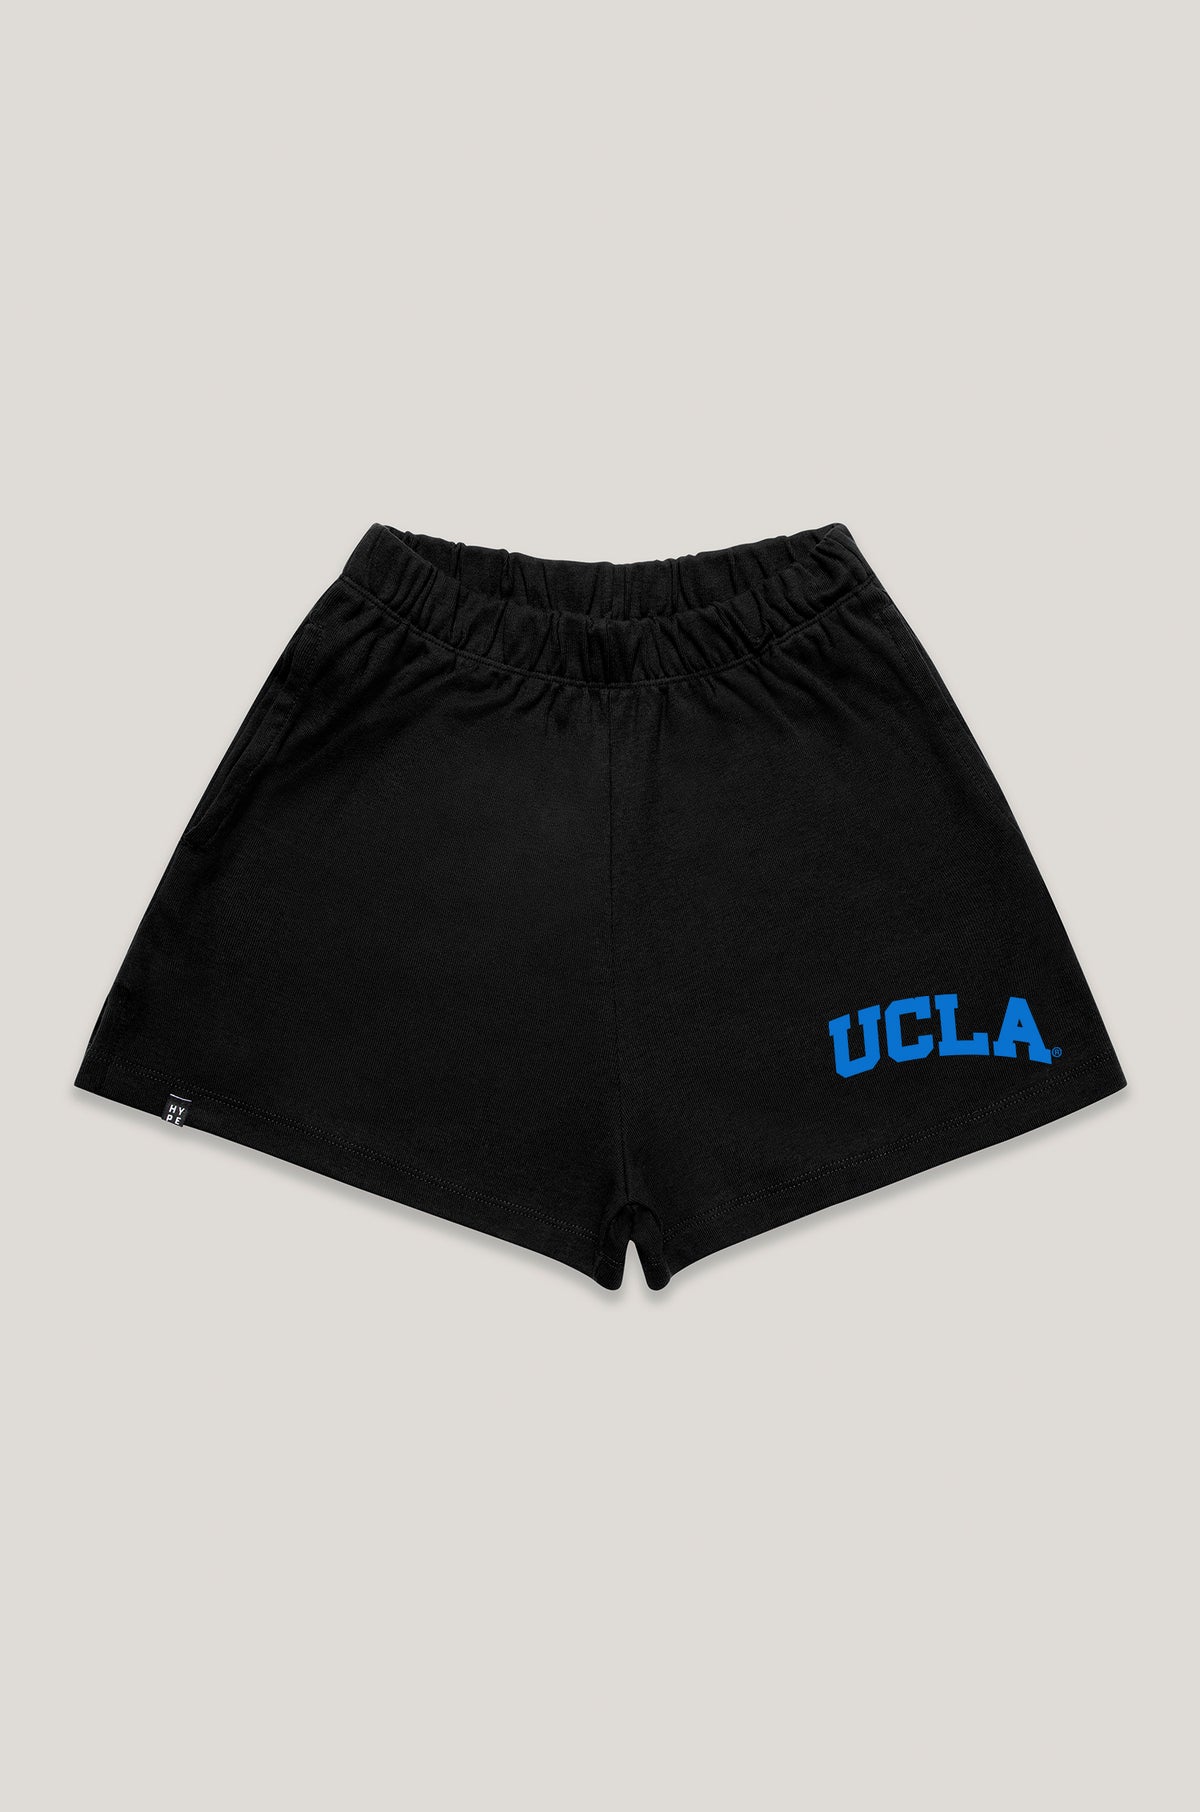 UCLA Track Shorts